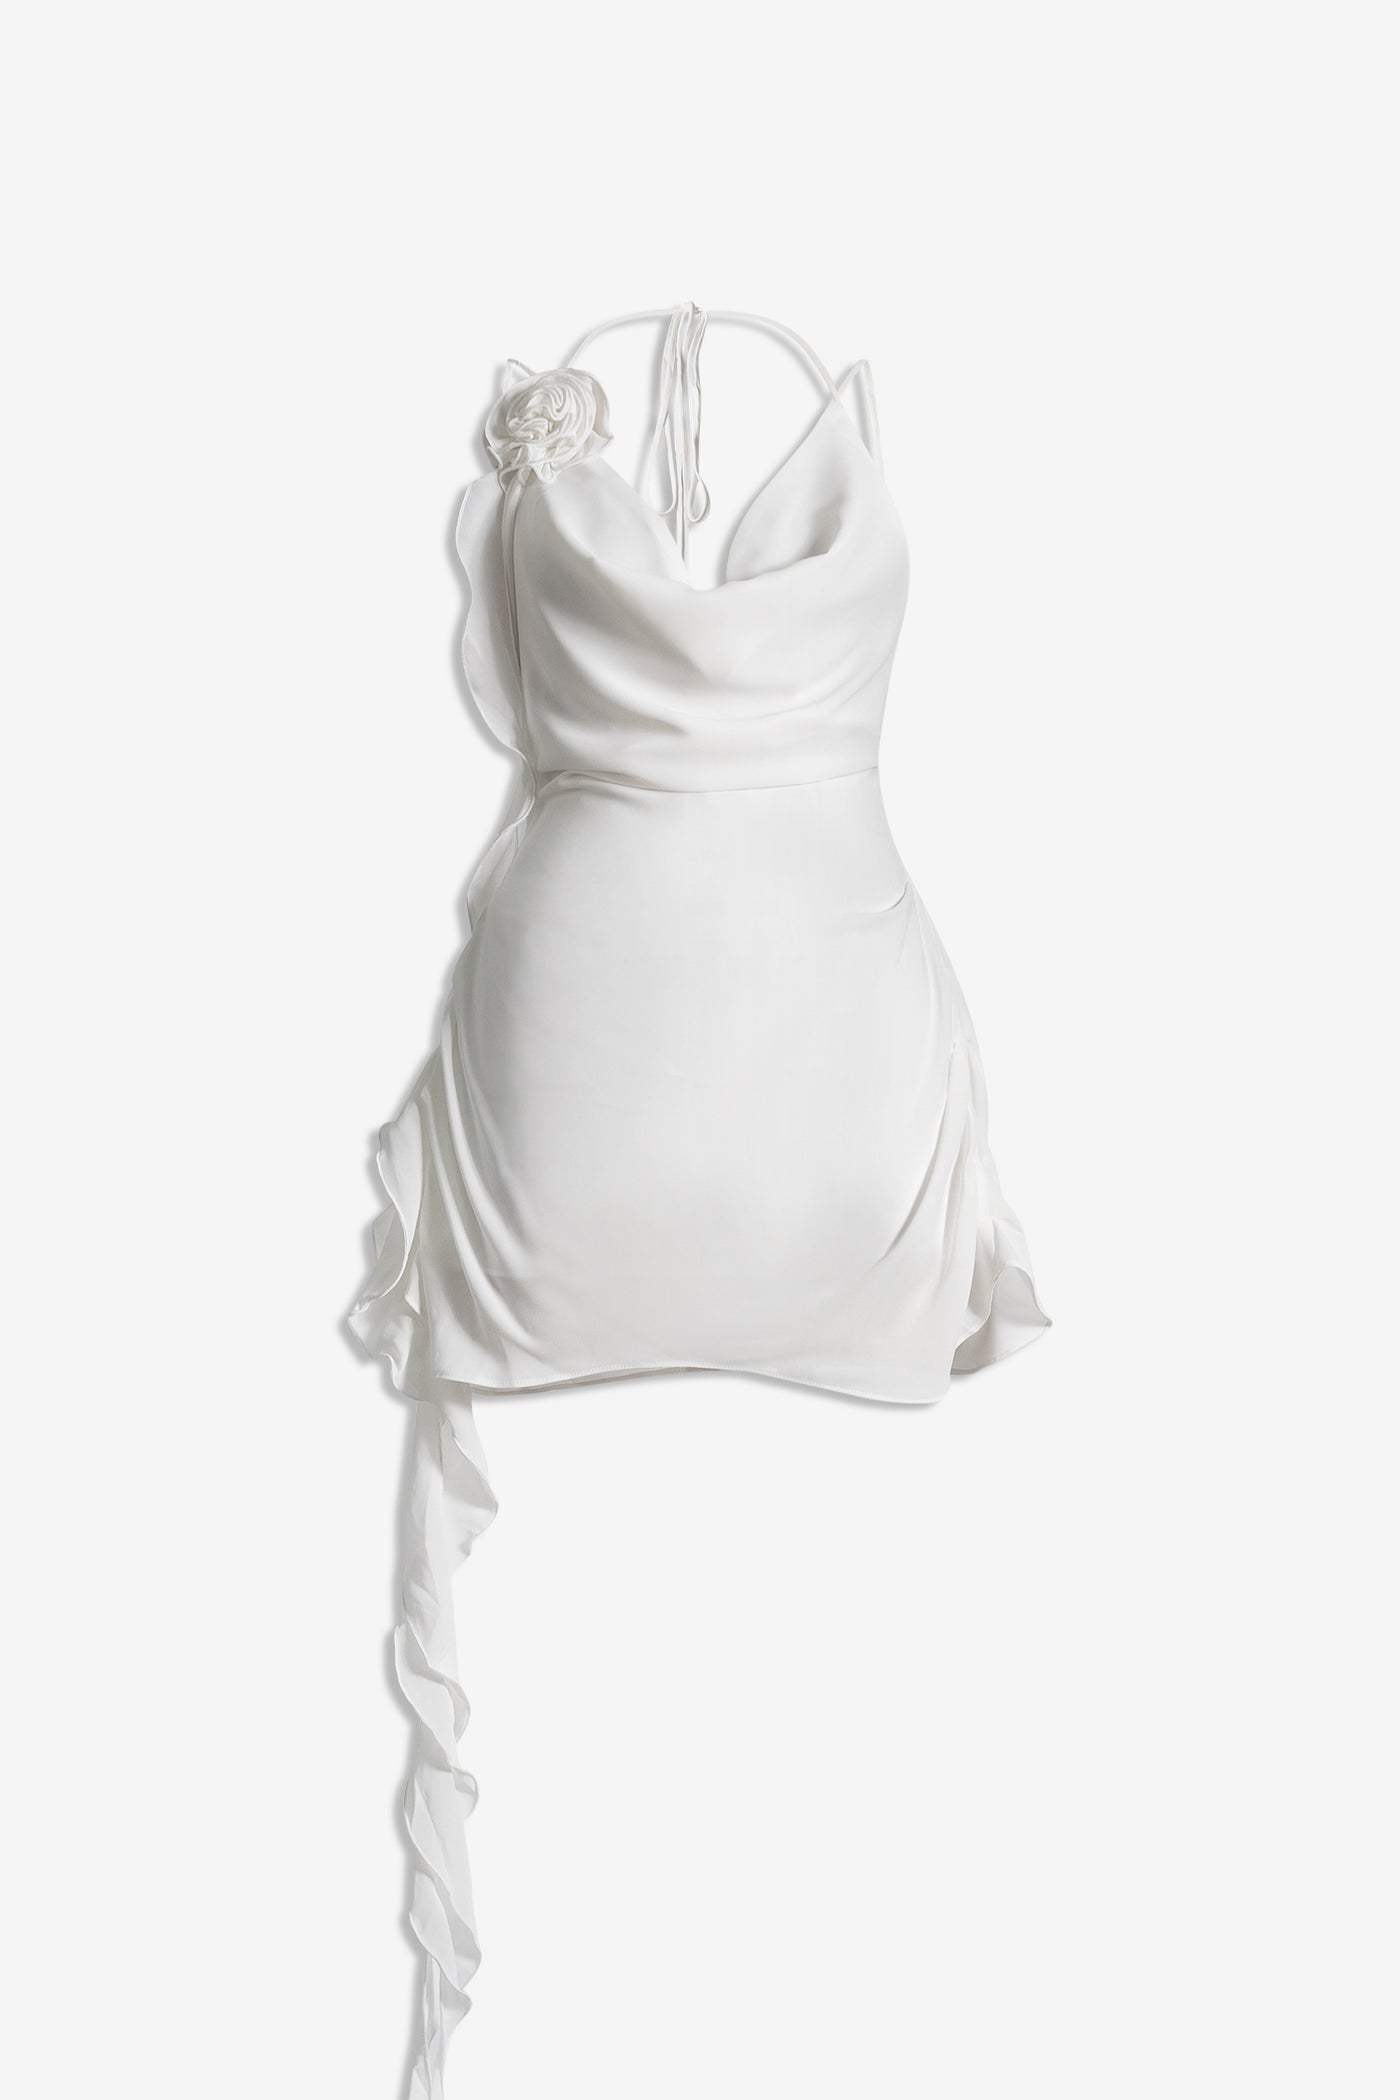 DELIA MINIDRESS - WHITE MND dress, group_deliaminidress, party